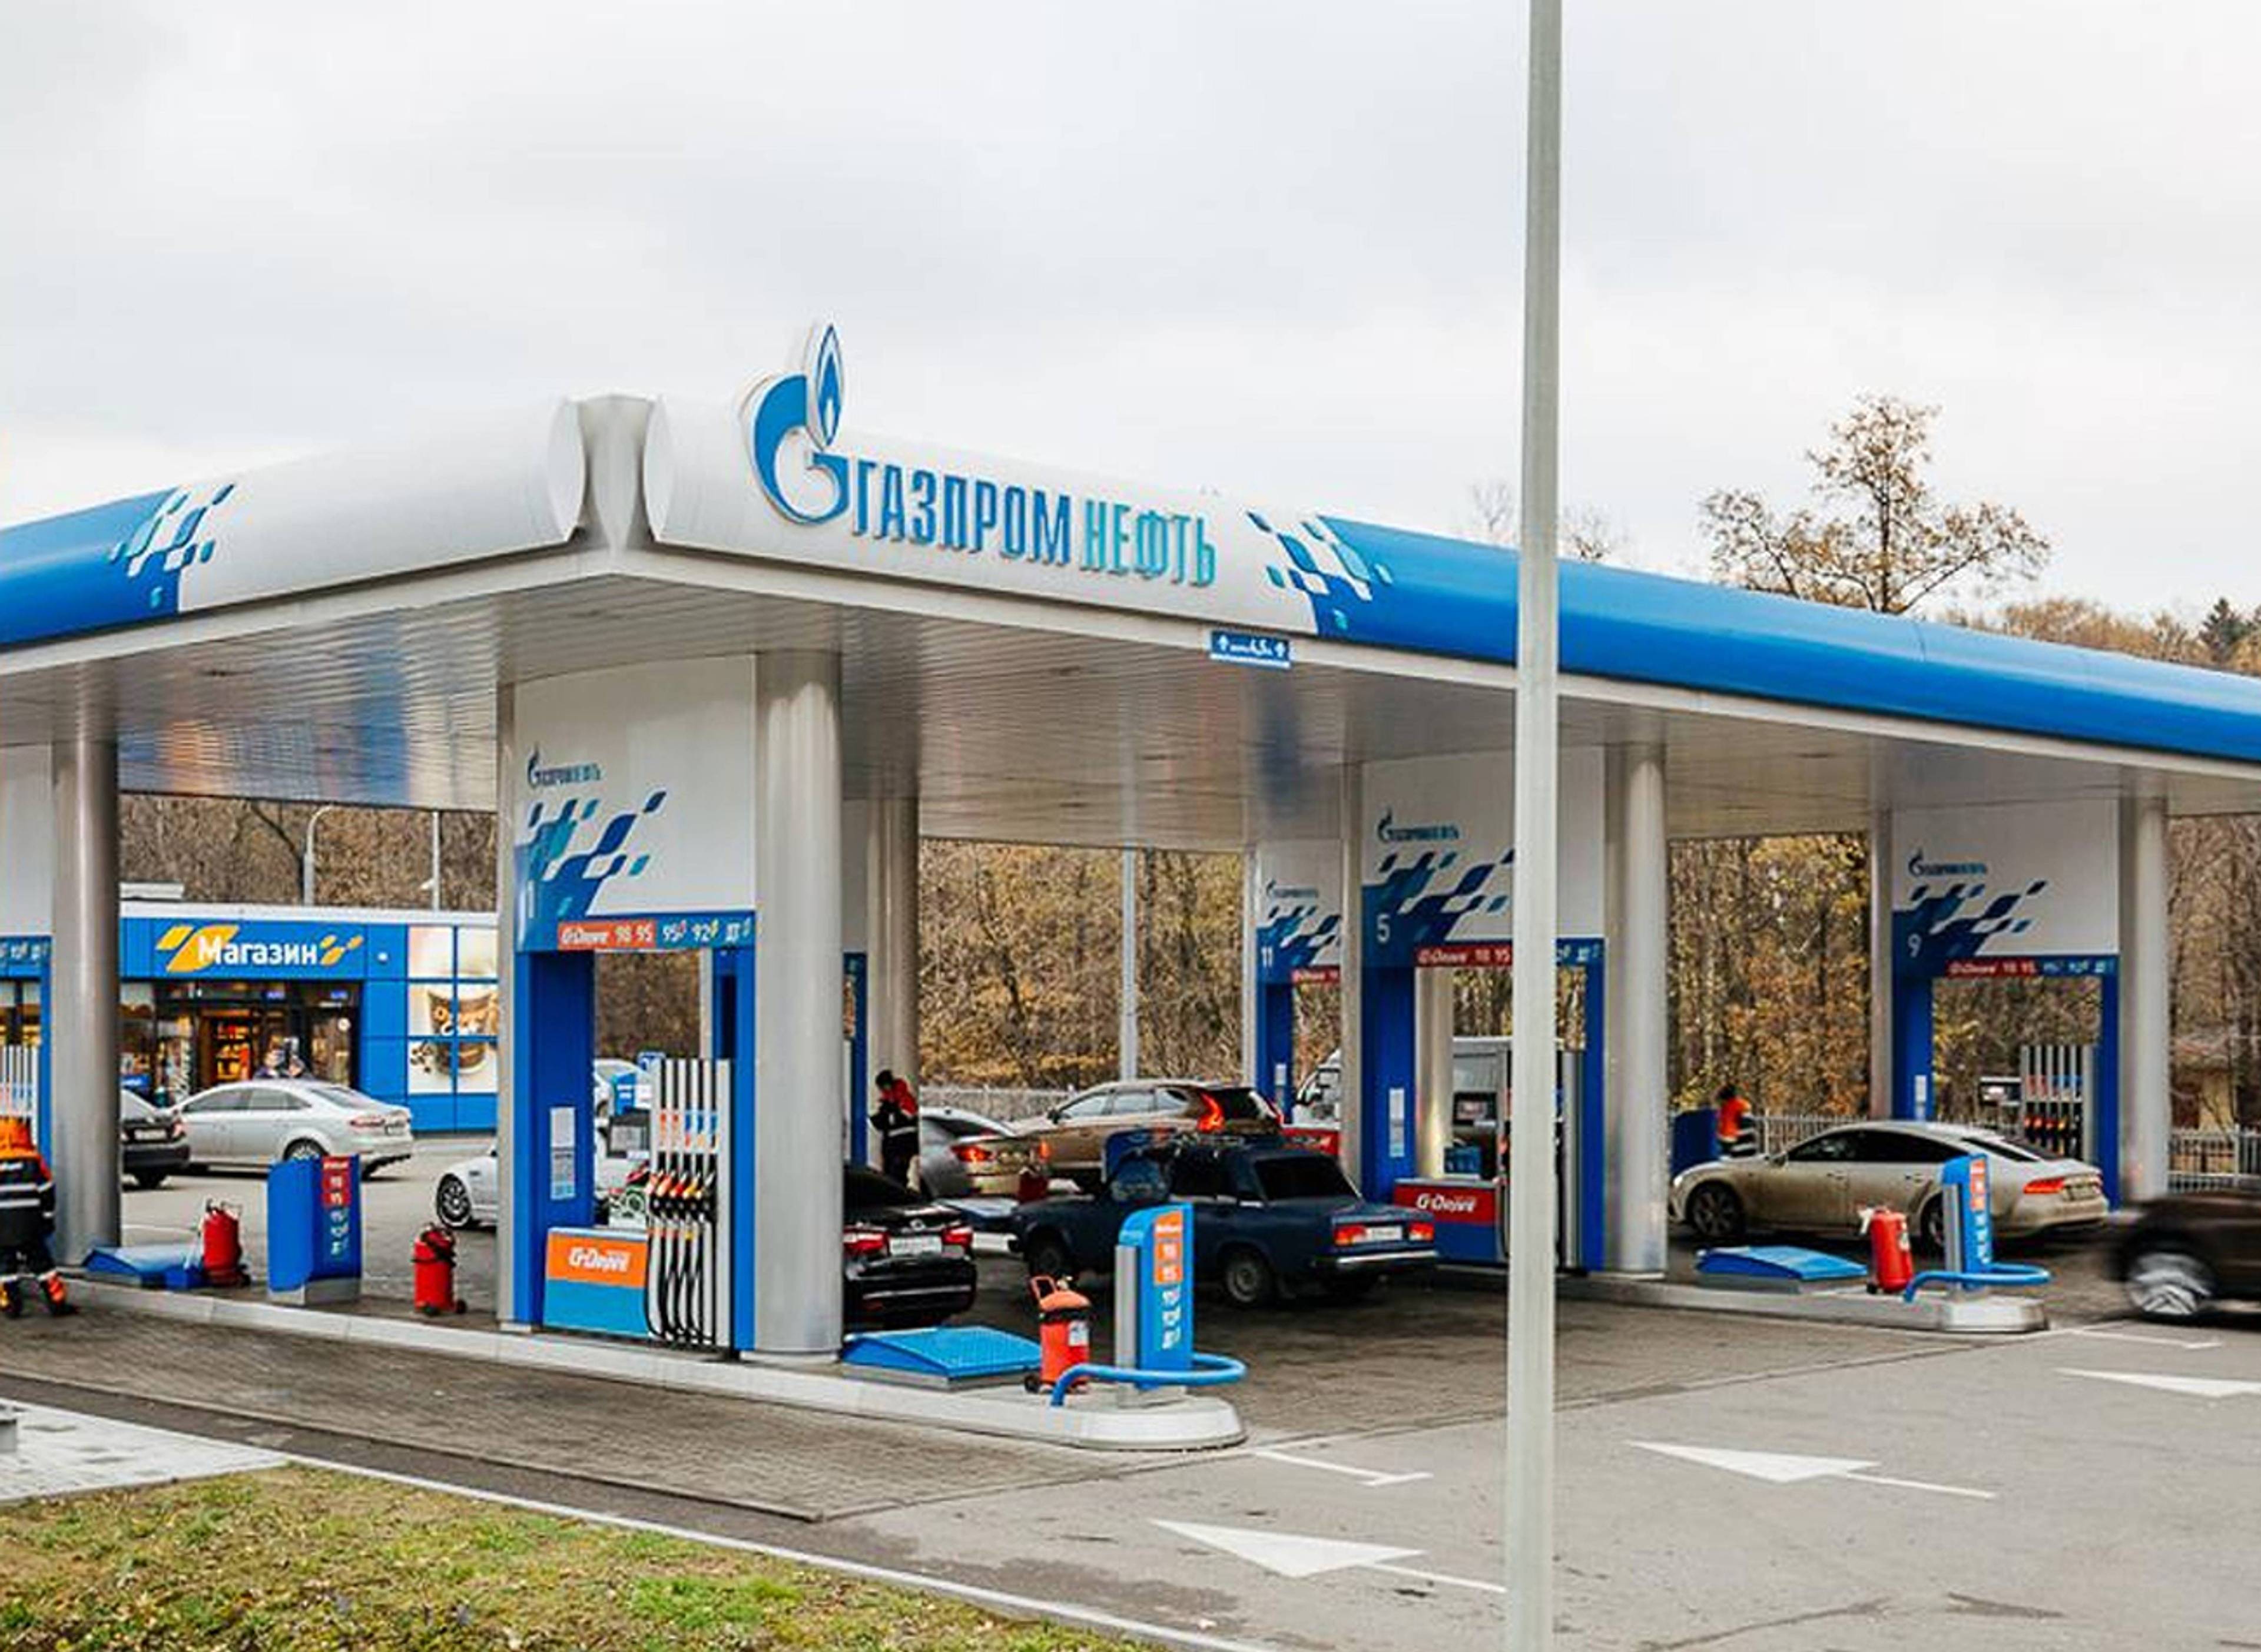 Gazpromneft filling station #113